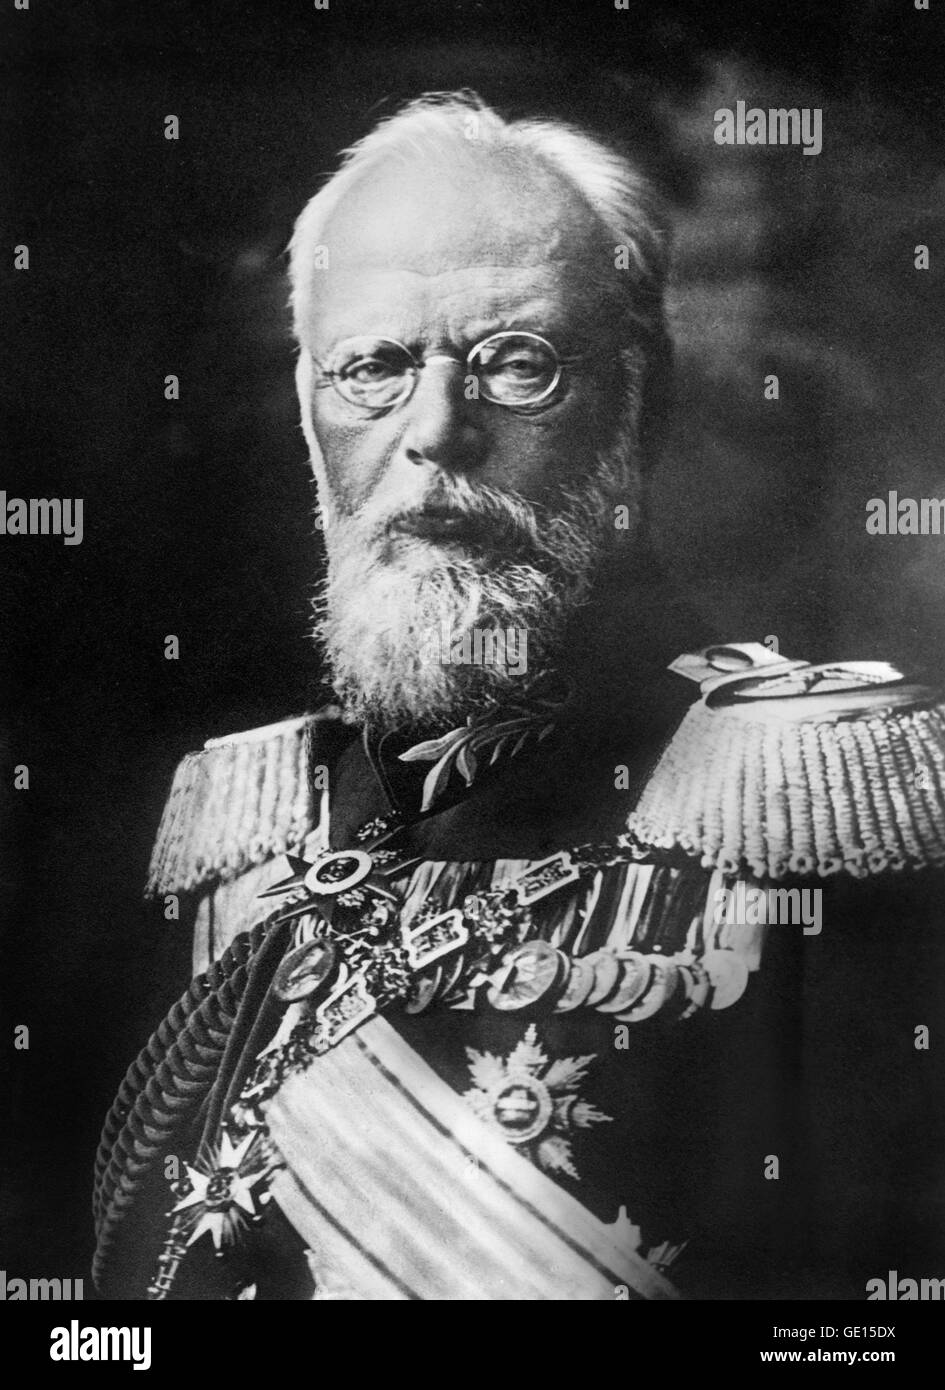 Ludwig III de Baviera. Retrato del Rey Ludwig III (1845-1921), quien fue el último Rey de Baviera, reinando desde 1913 a 1918. Foto sin fecha desde el Servicio de Noticias Bain. Foto de stock